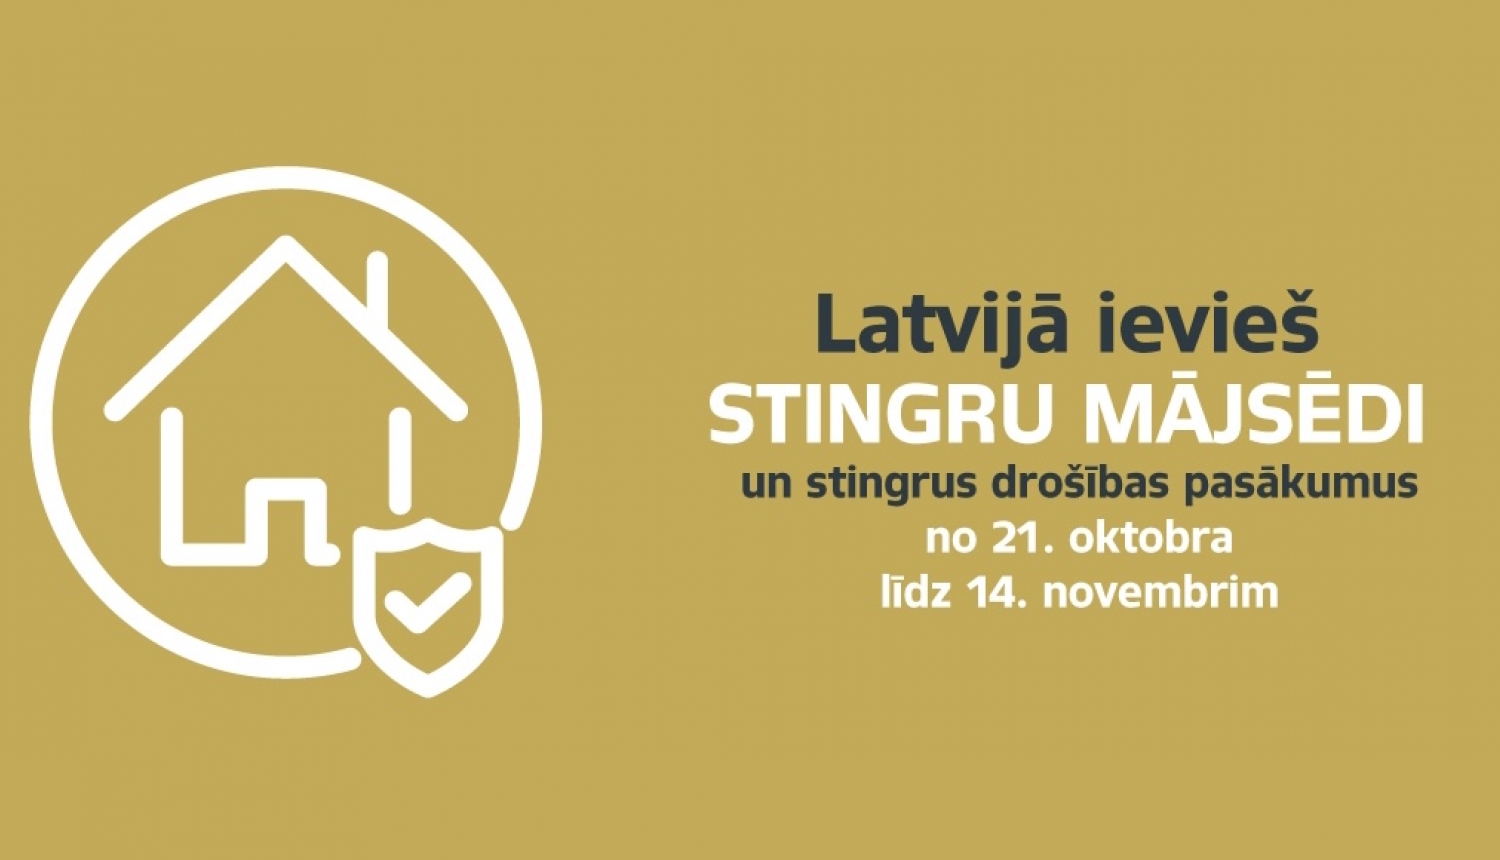 Latvijā ievieš stingru mājsēdi no 21.oktobra līdz 14.novembrim